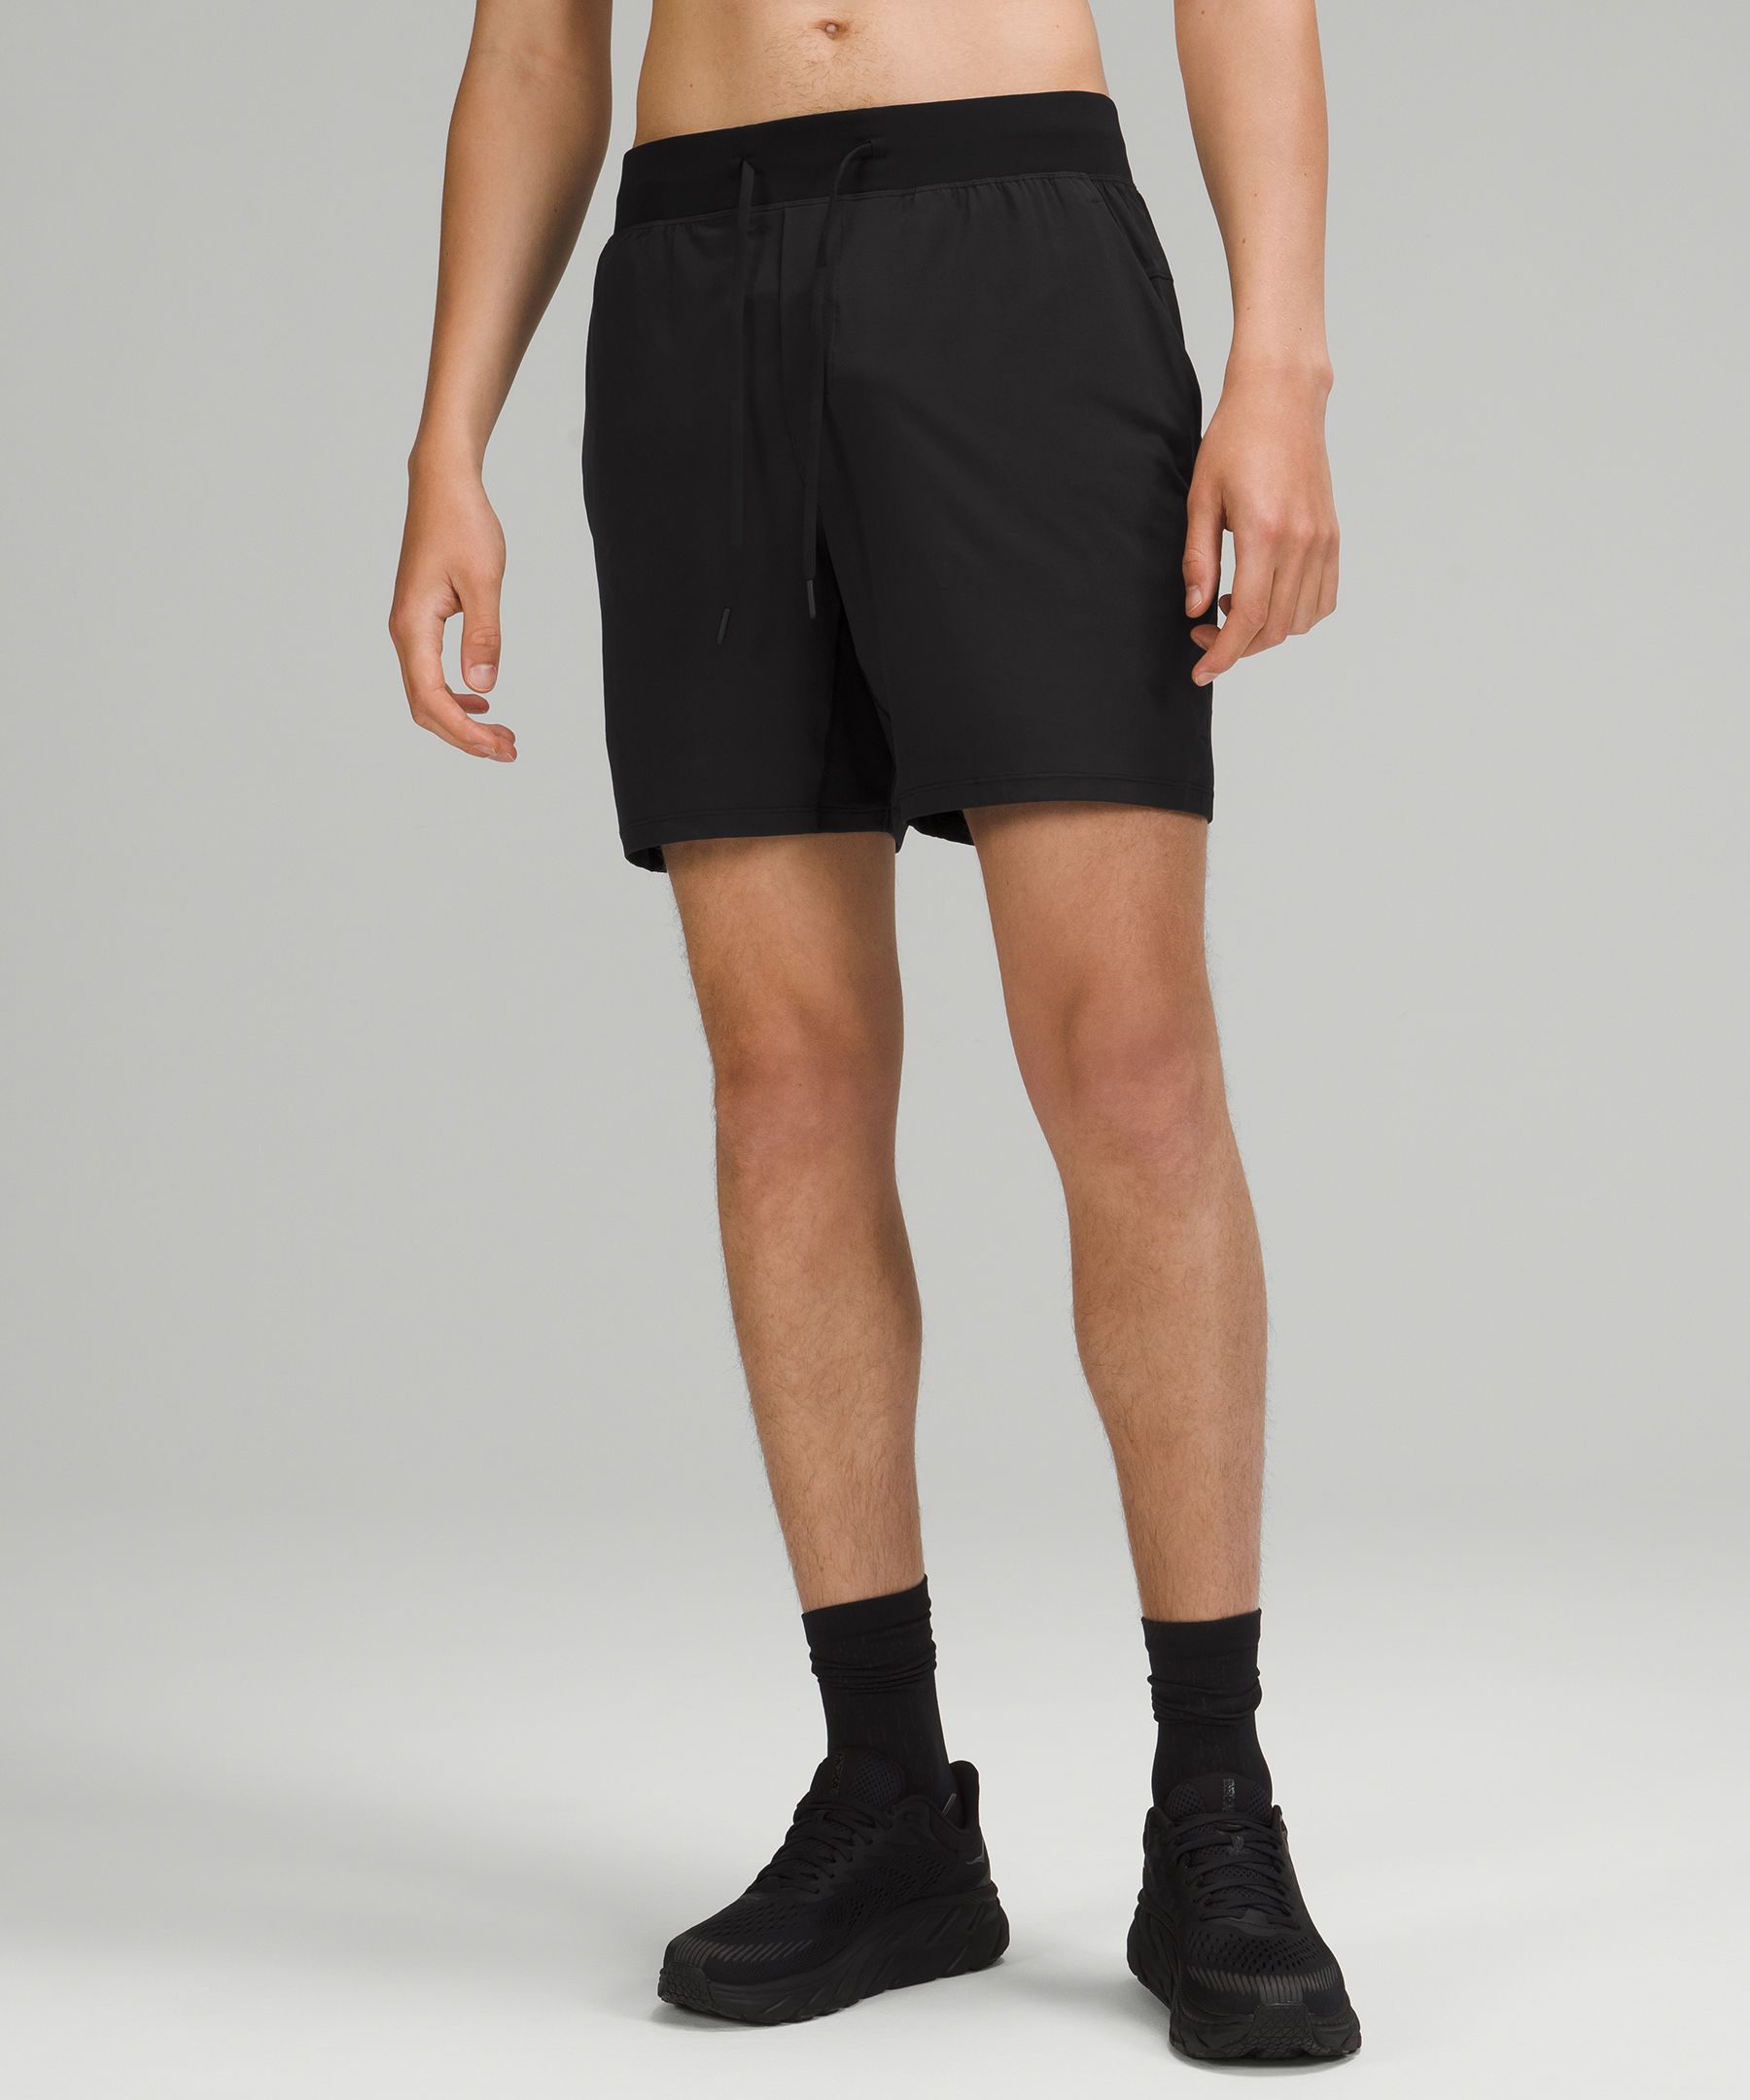 lululemon men's athletic shorts